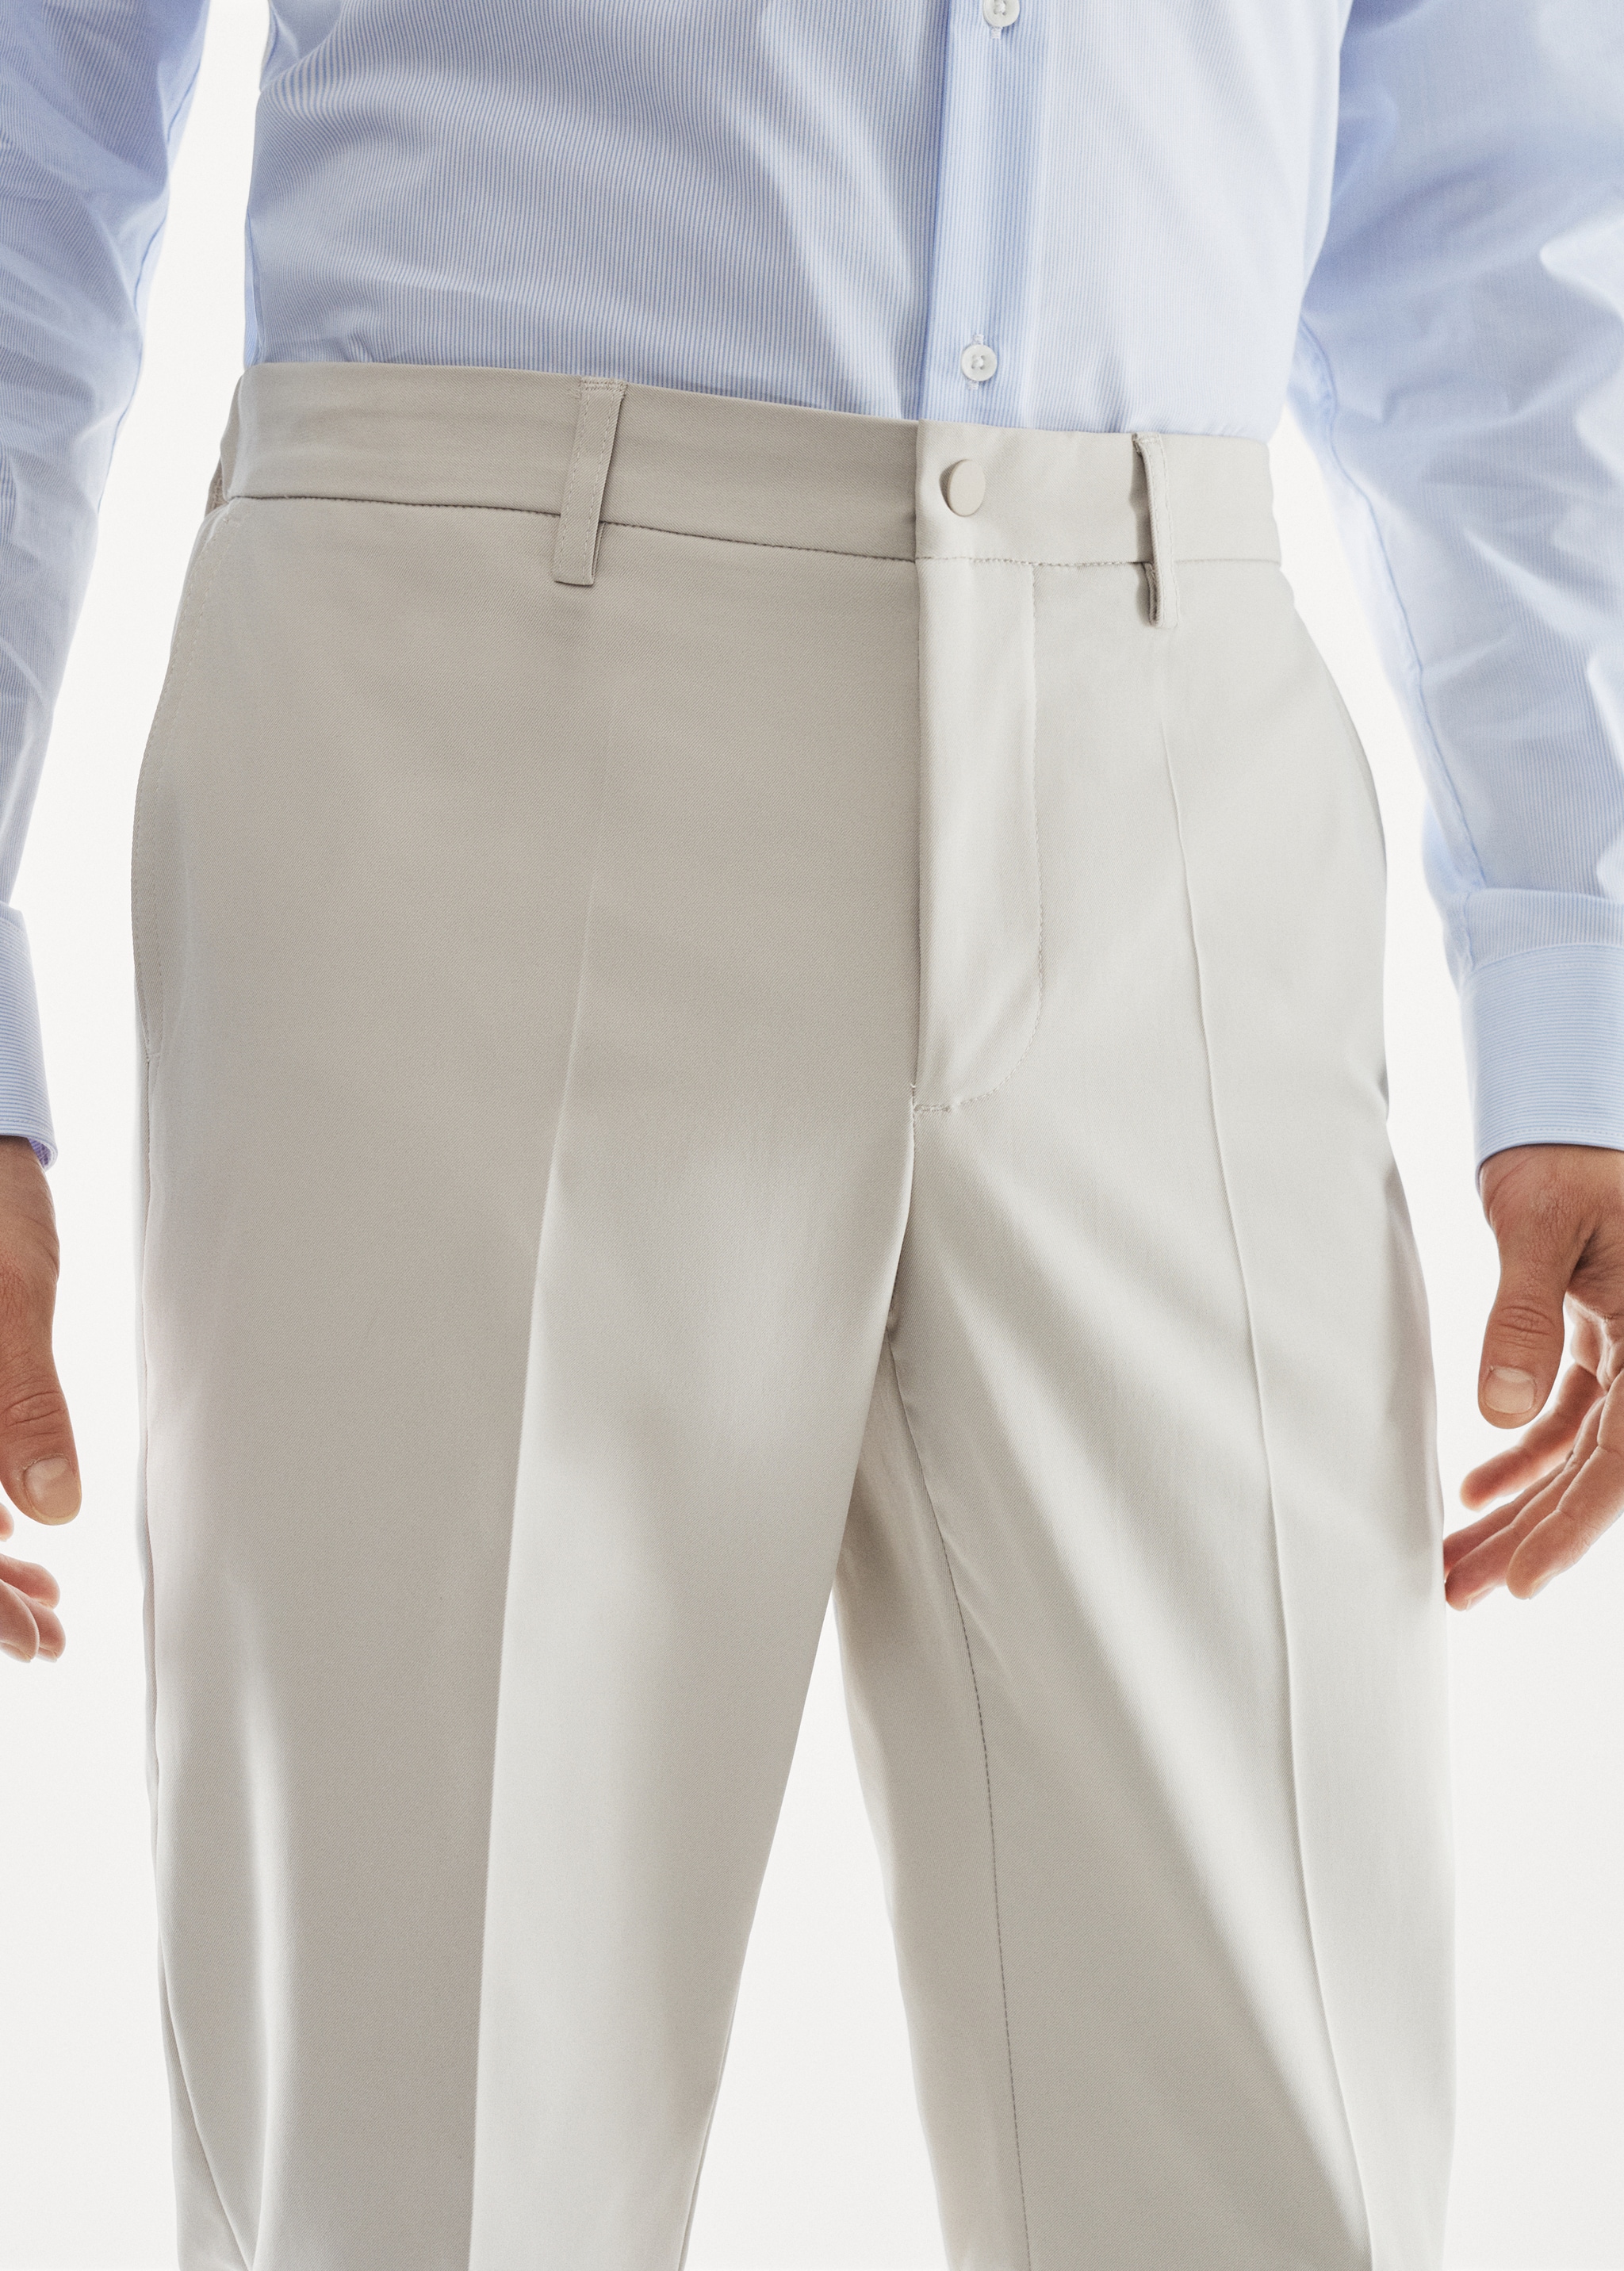 Pantalón traje slim fit tejido técnico - Detalle del artículo 1